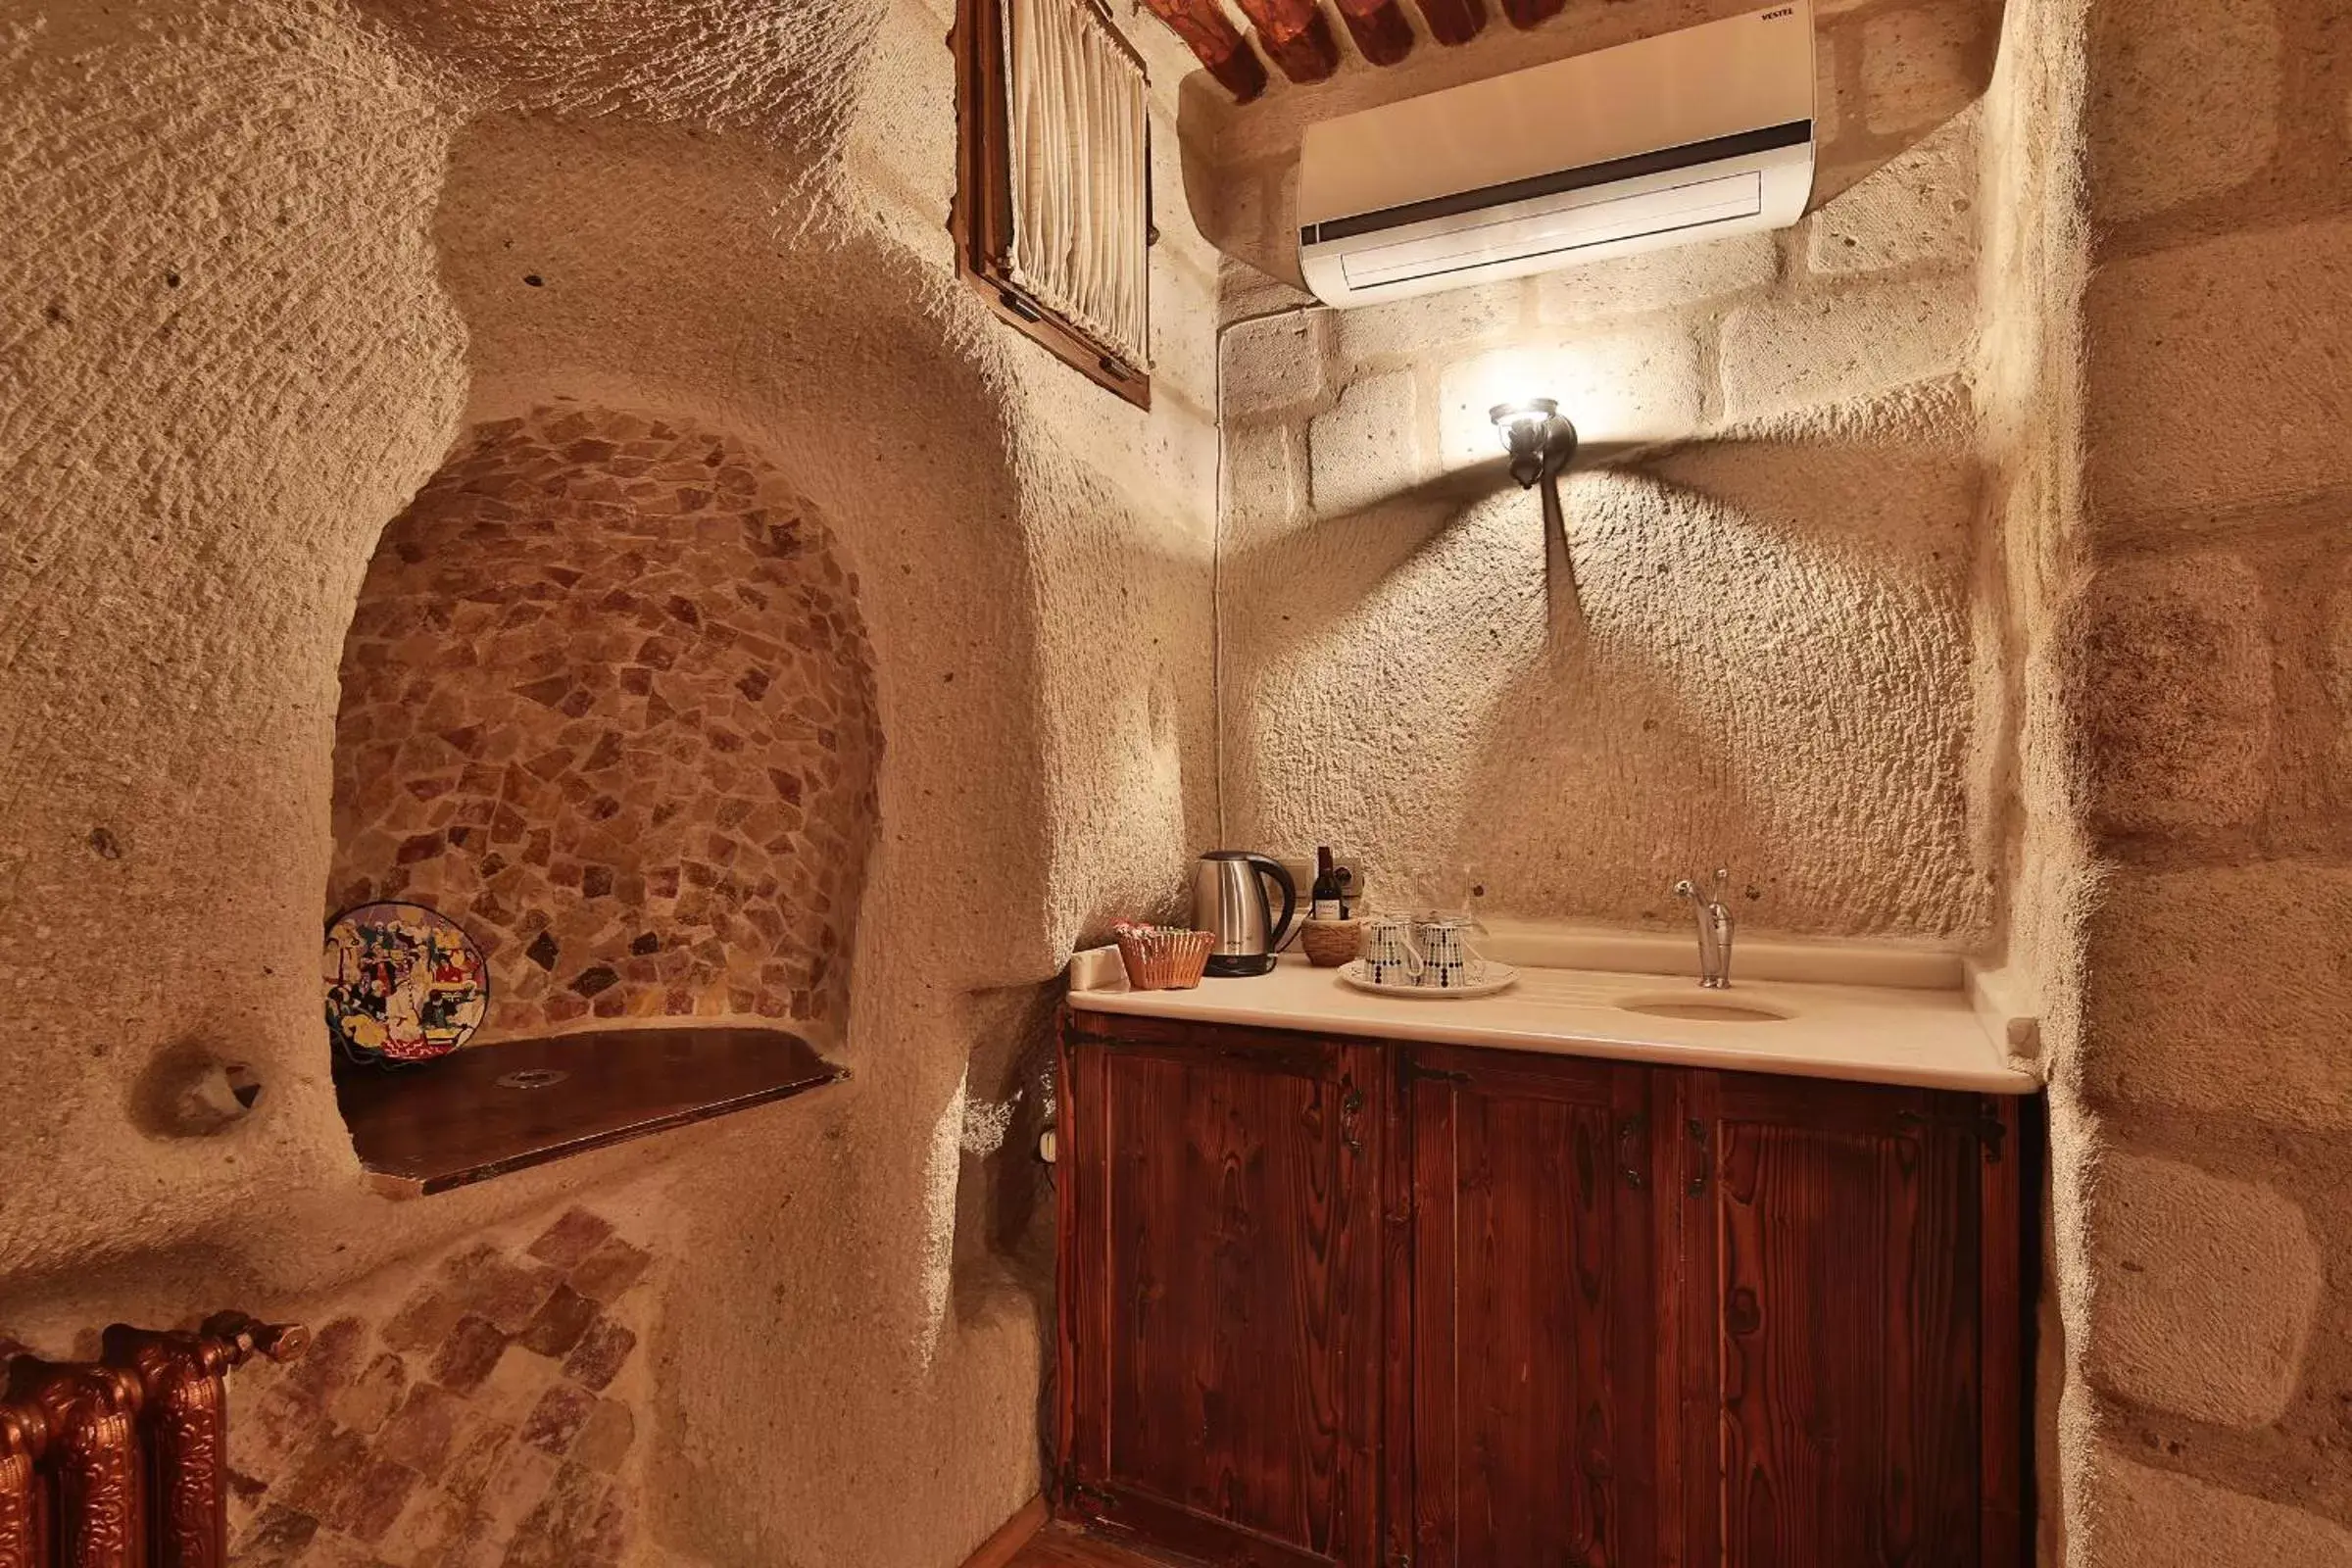 Coffee/tea facilities, Bathroom in Cappadocia Cave Suites